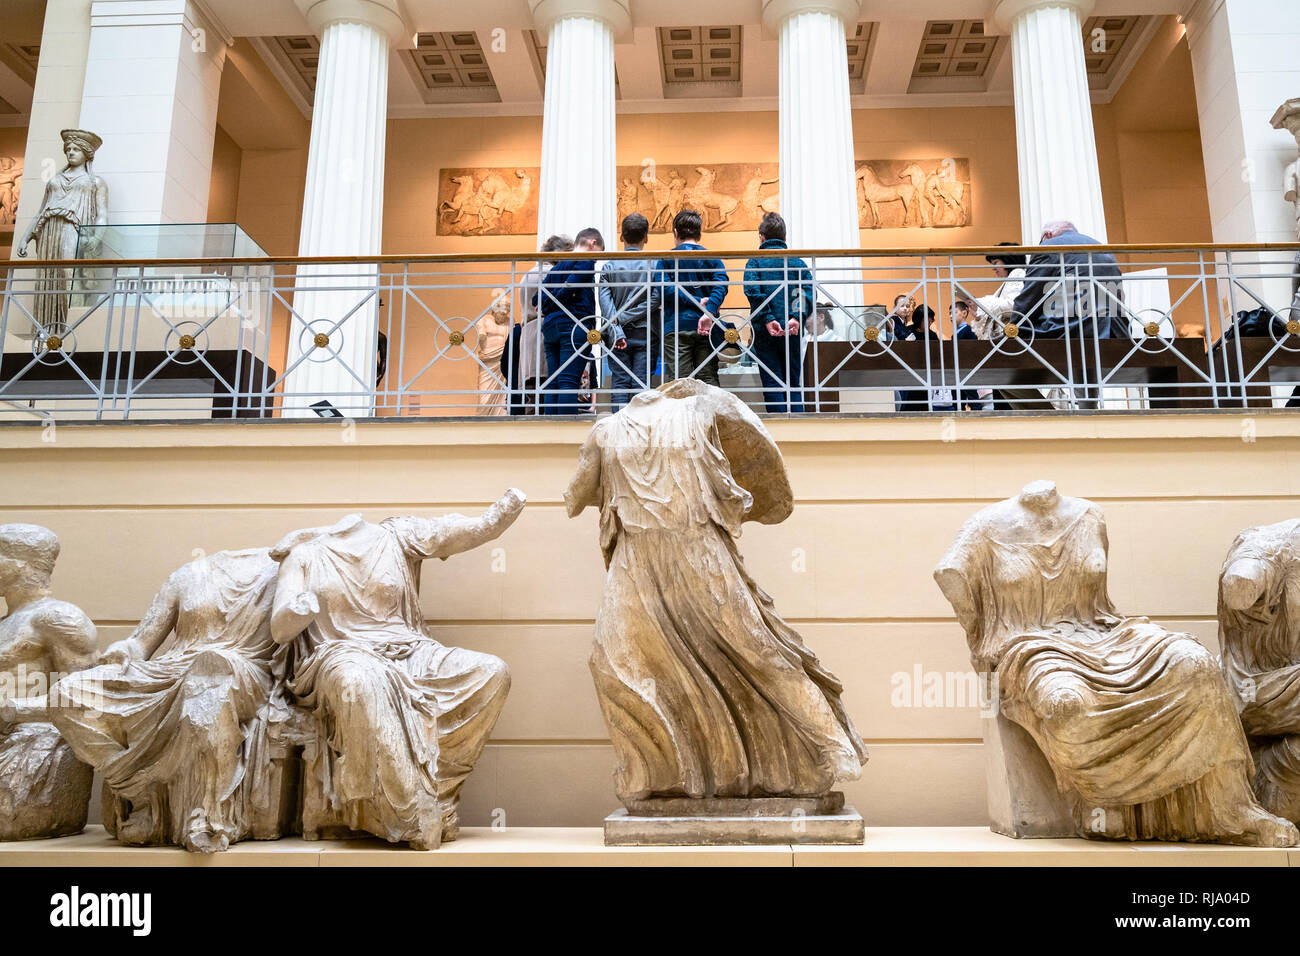 Mosca, Russia - 25 gennaio 2019: i visitatori e repliche di statue in greco antico cortile di Pushkin Museo Statale di Belle Arti. Museo Puskin è Foto Stock